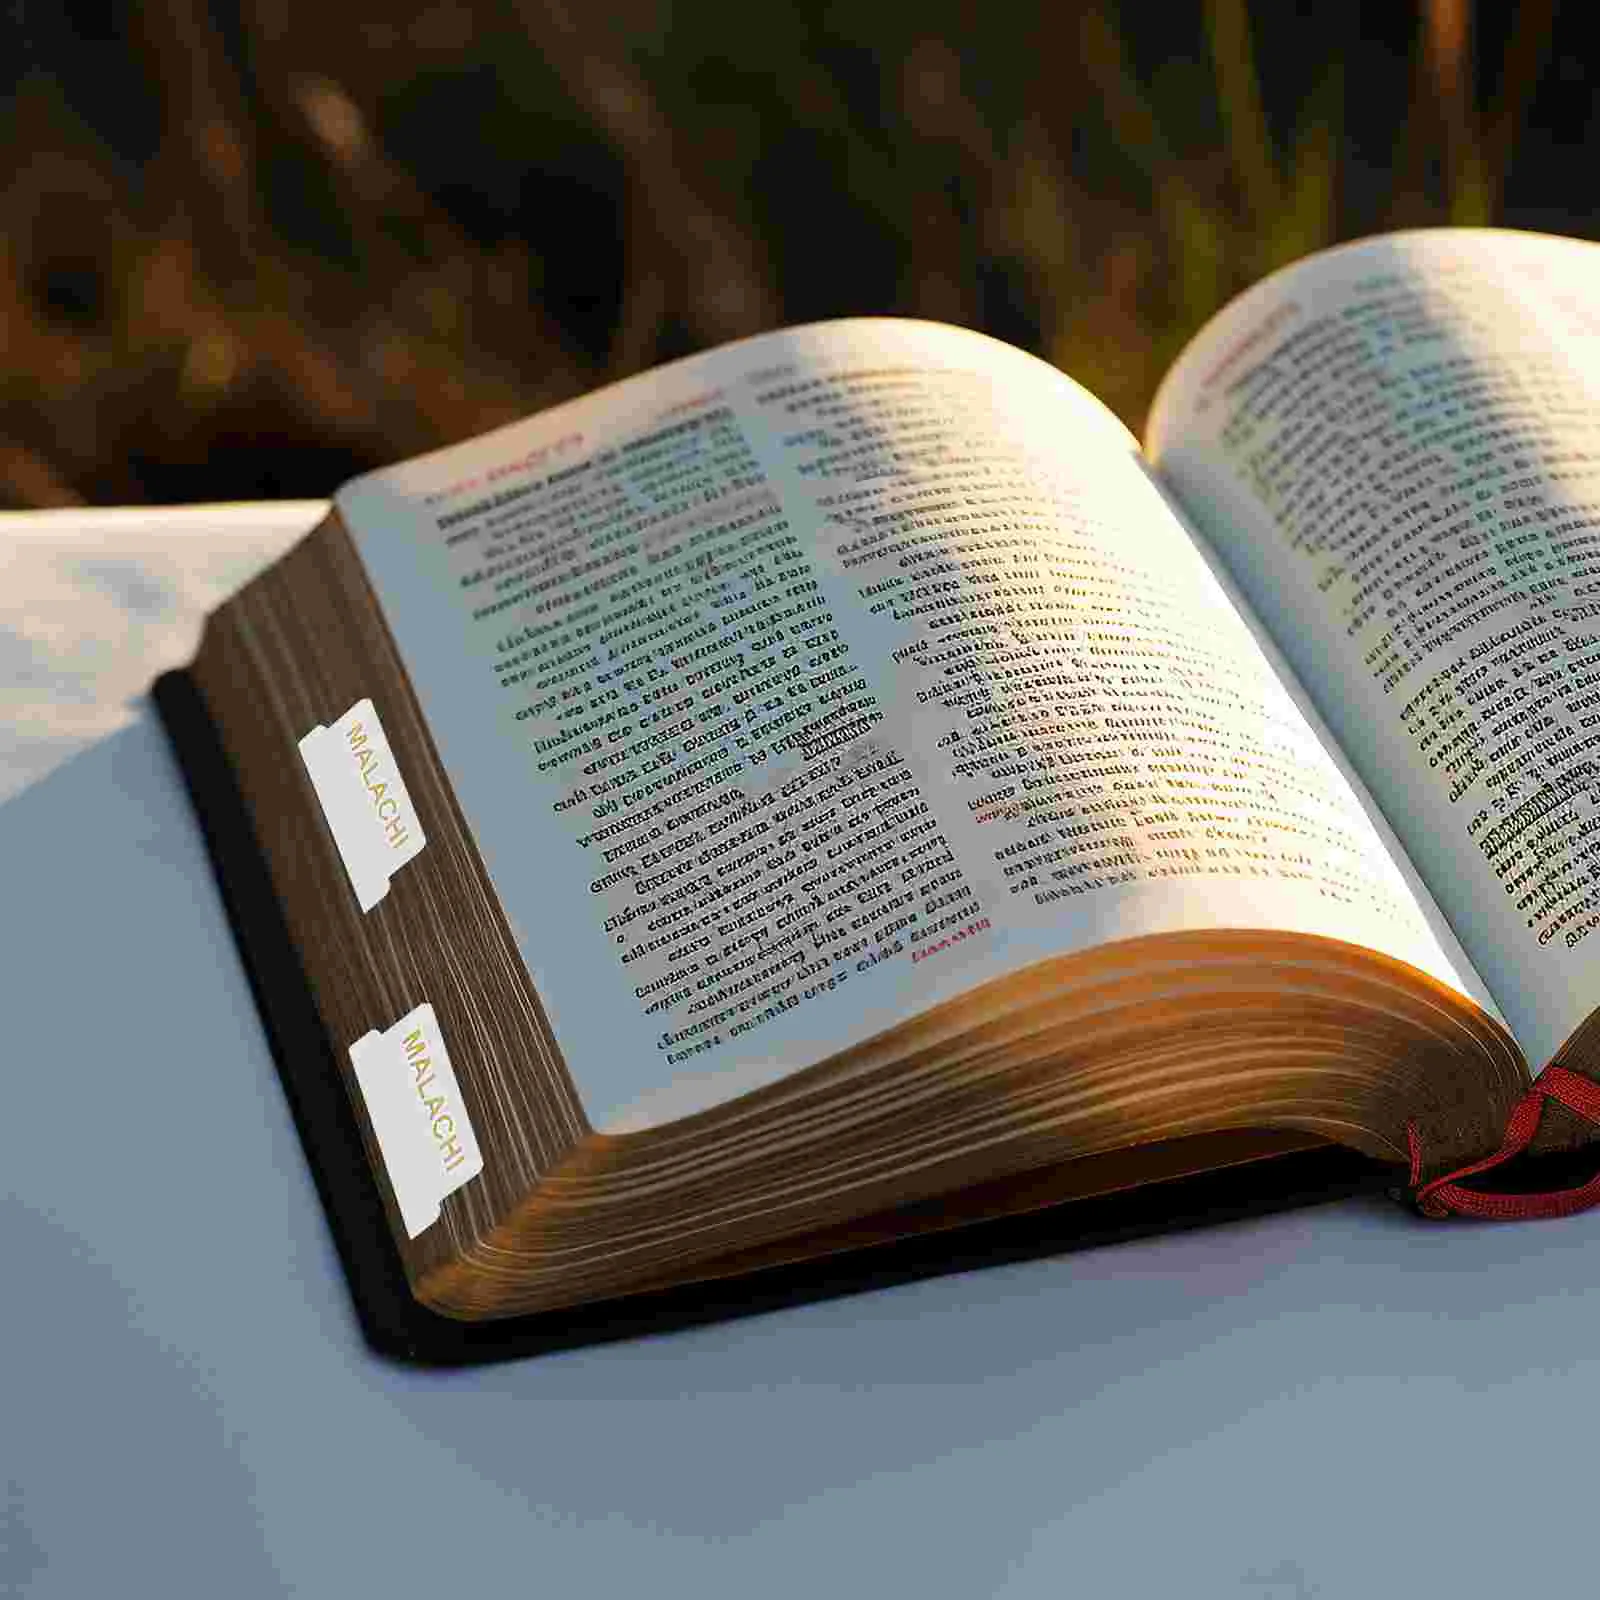 10 Листов вкладок для изучения Библии Декоративные вкладки для изучения Библии Вкладки для изучения Библии Маленькие вкладки для книг из Библии Маленькие этикетки для Библии Изображение 1